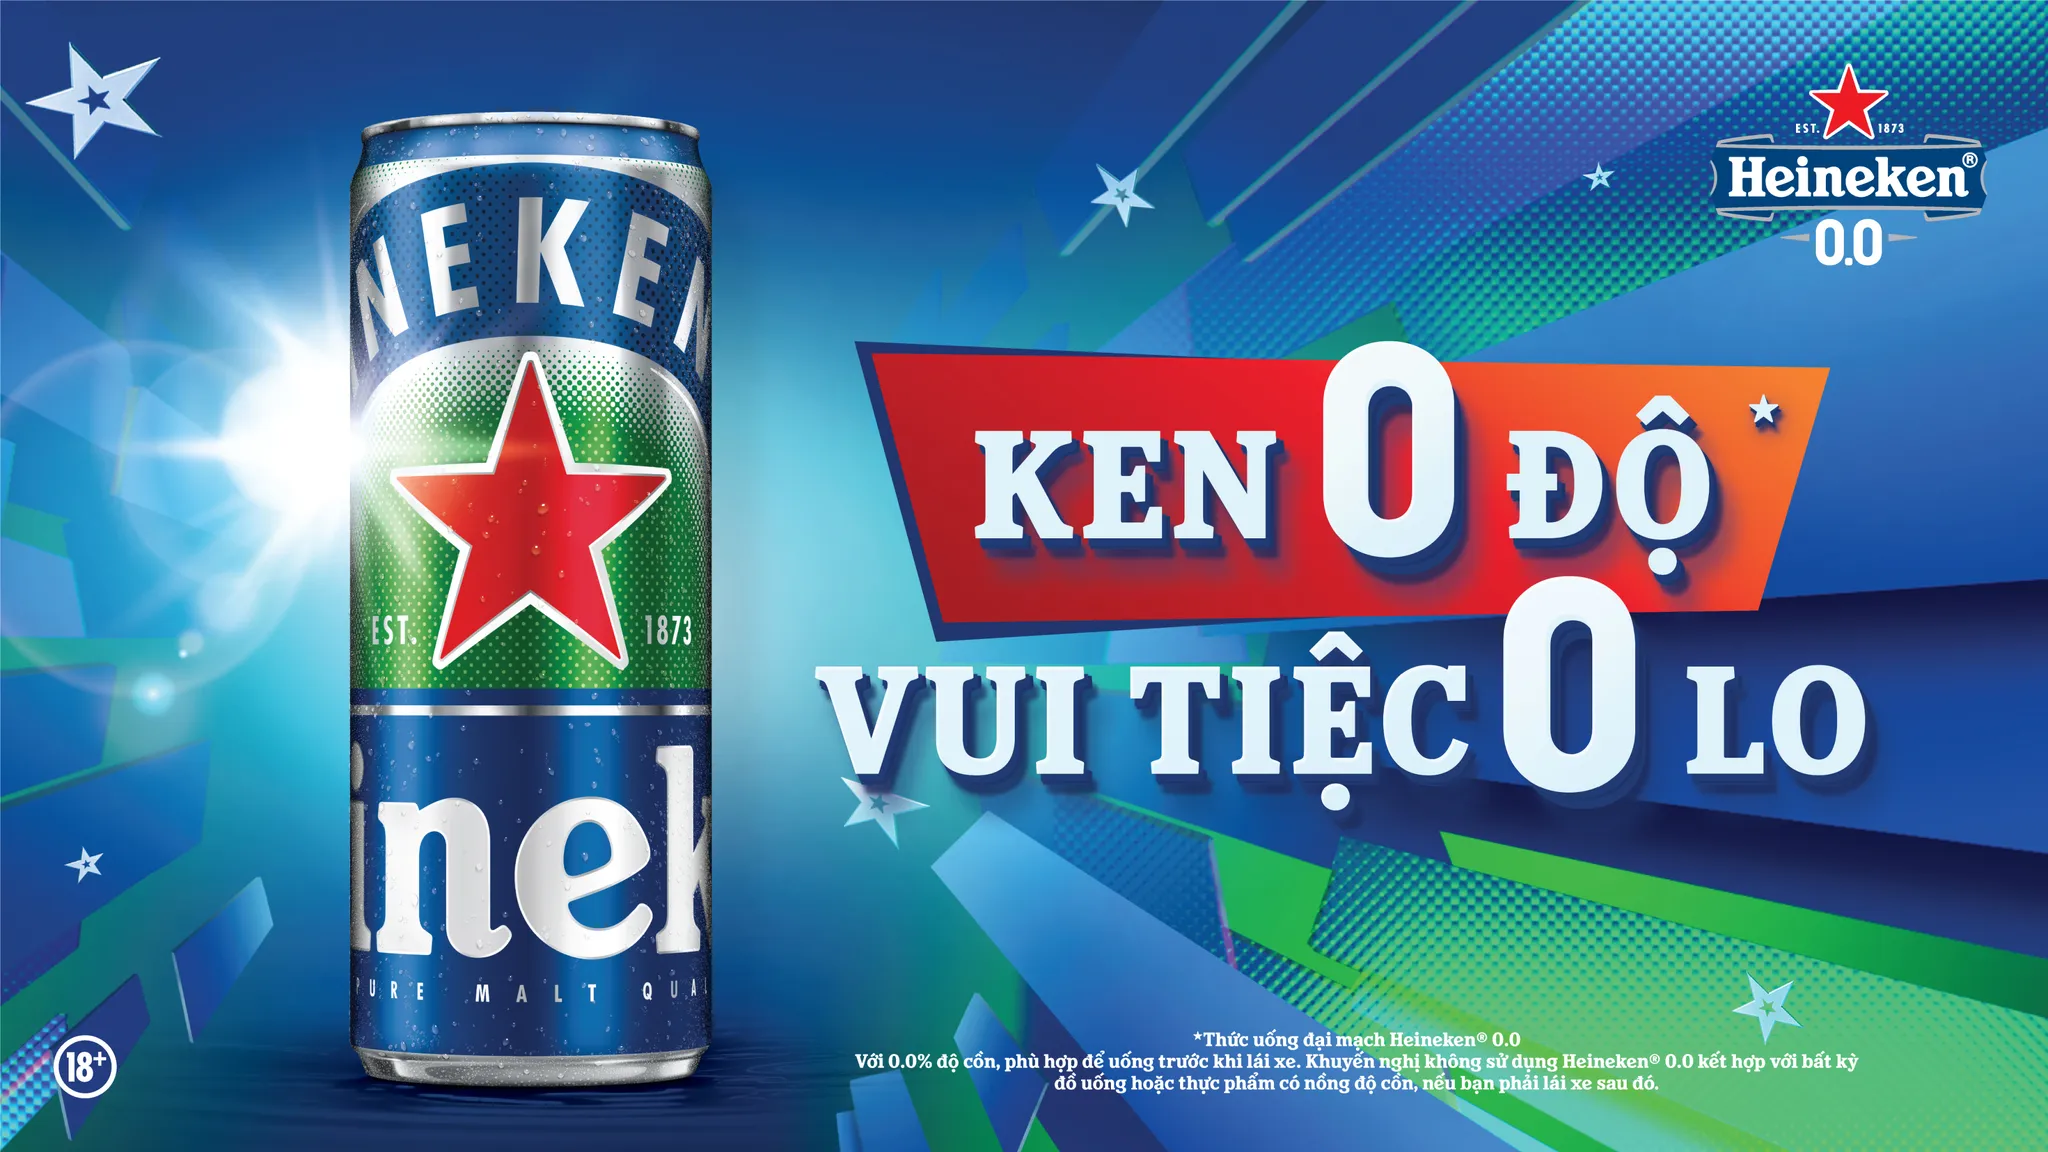 Heineken 0.0 tiếp tục nhân rộng mô hình “Trạm Không Độ”, hướng người tiêu dùng đến văn hóa “Uống có trách nhiệm”